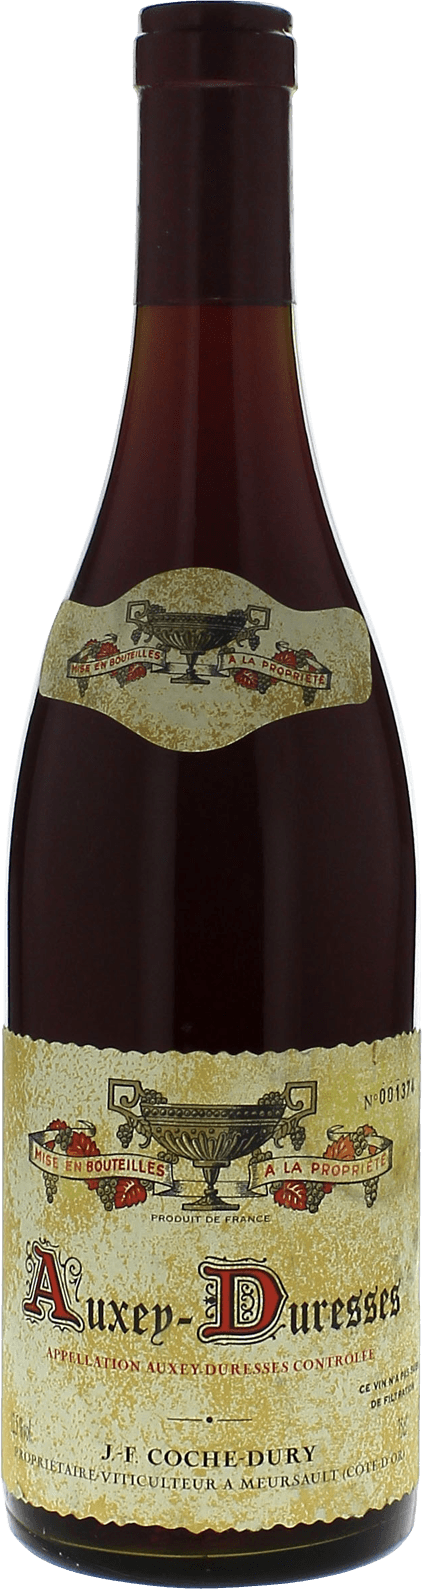 Auxey duresses cte de beaune 2013 Domaine COCHE-DURY, Bourgogne rouge